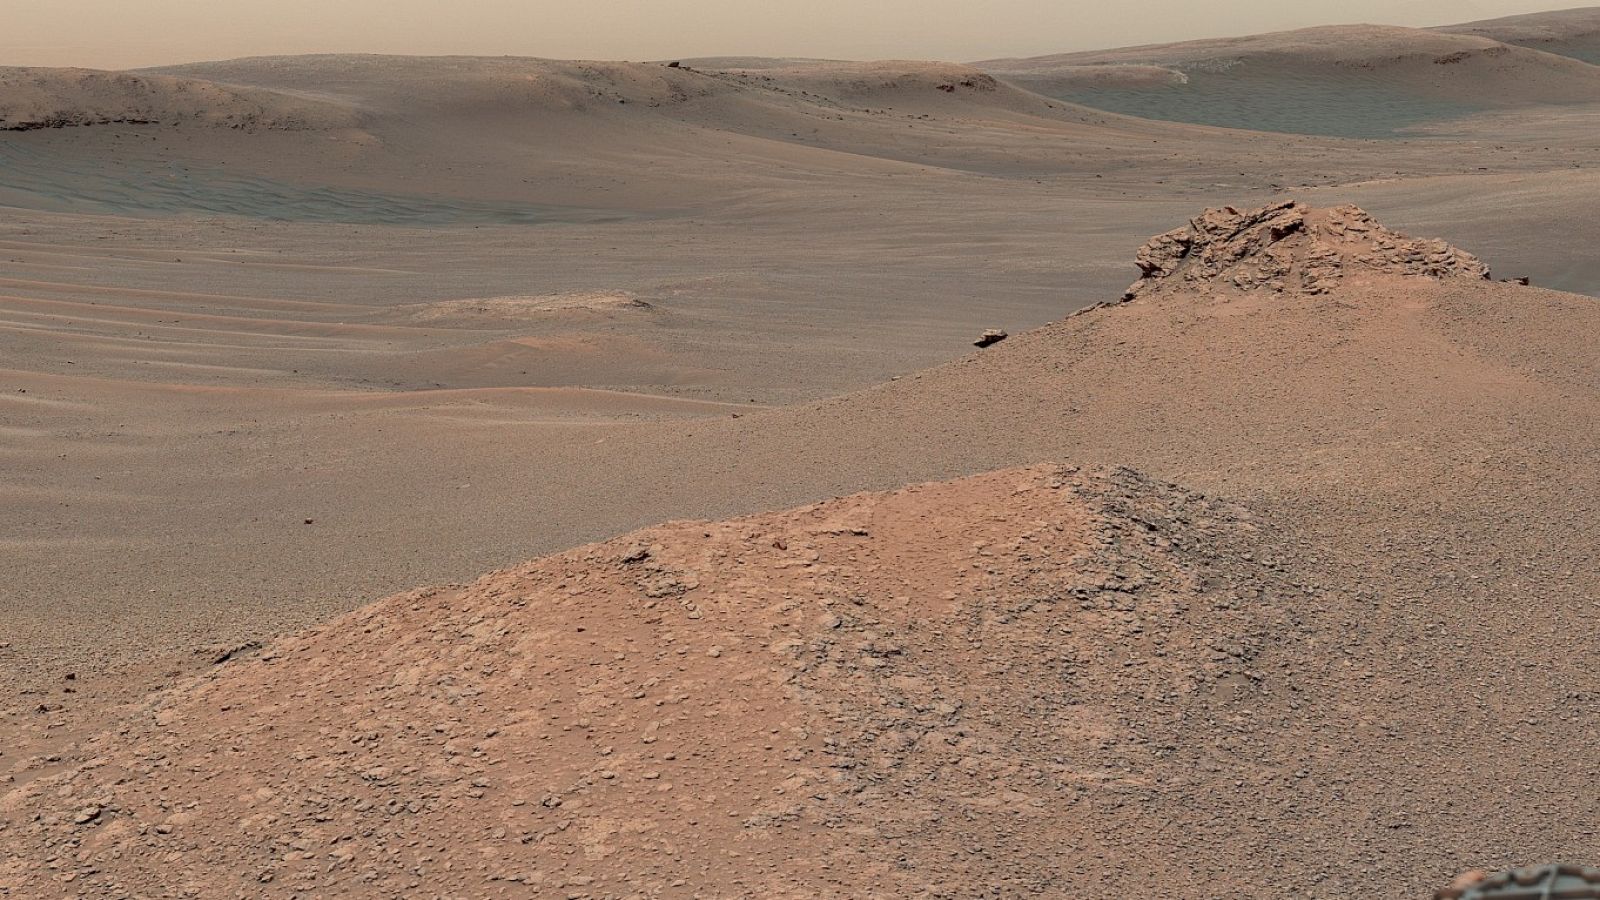 Imagen de Marte creada con las capturas de la Mast Camera a bordo del rover Curiosity de la NASA